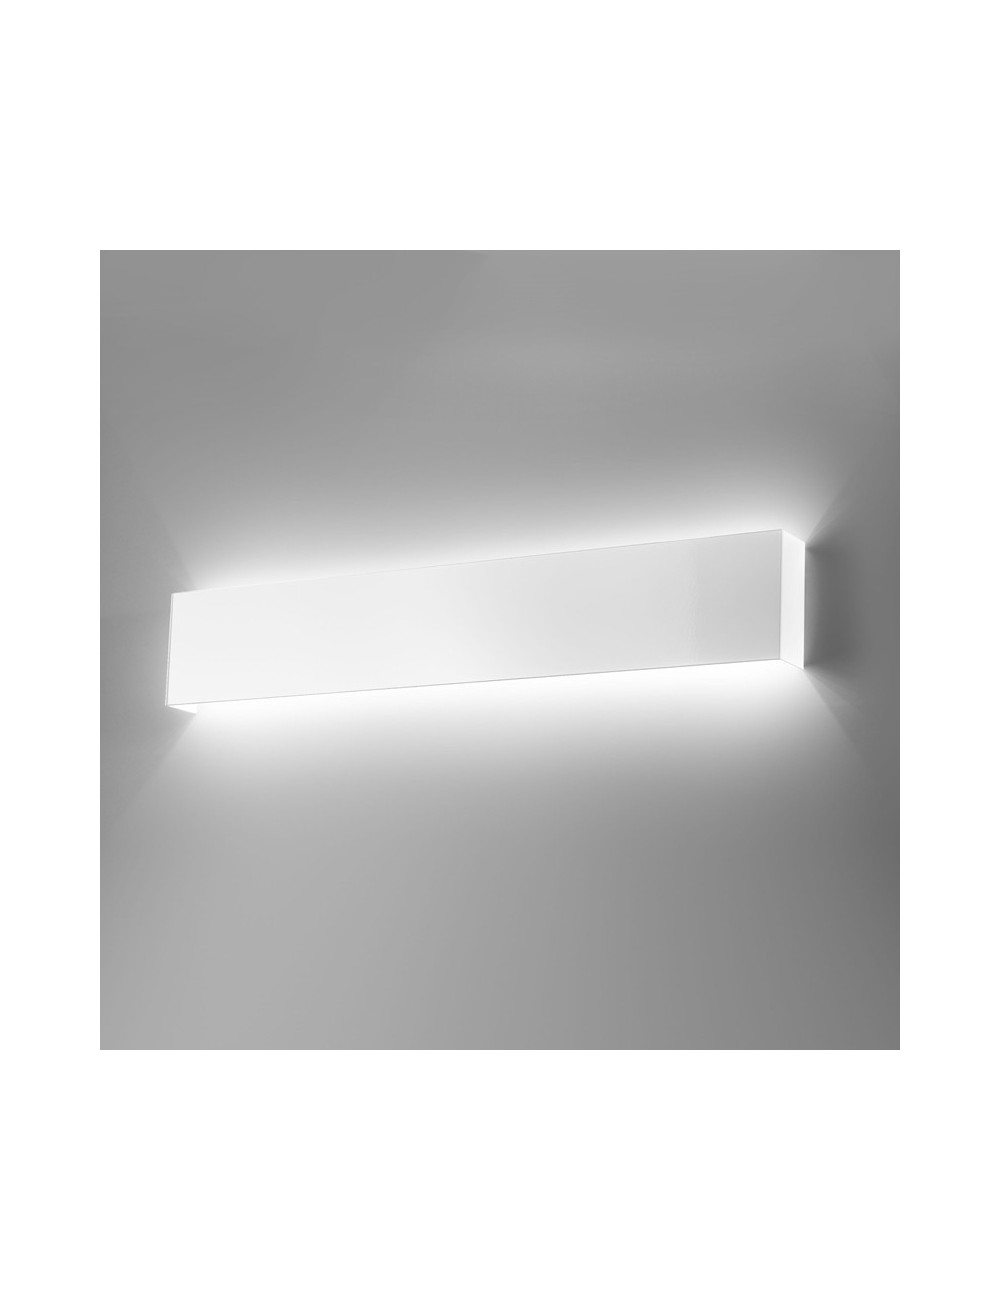 LINE LED by Antealuce, Applique en Métal Blanc L.60 Cm design moderne